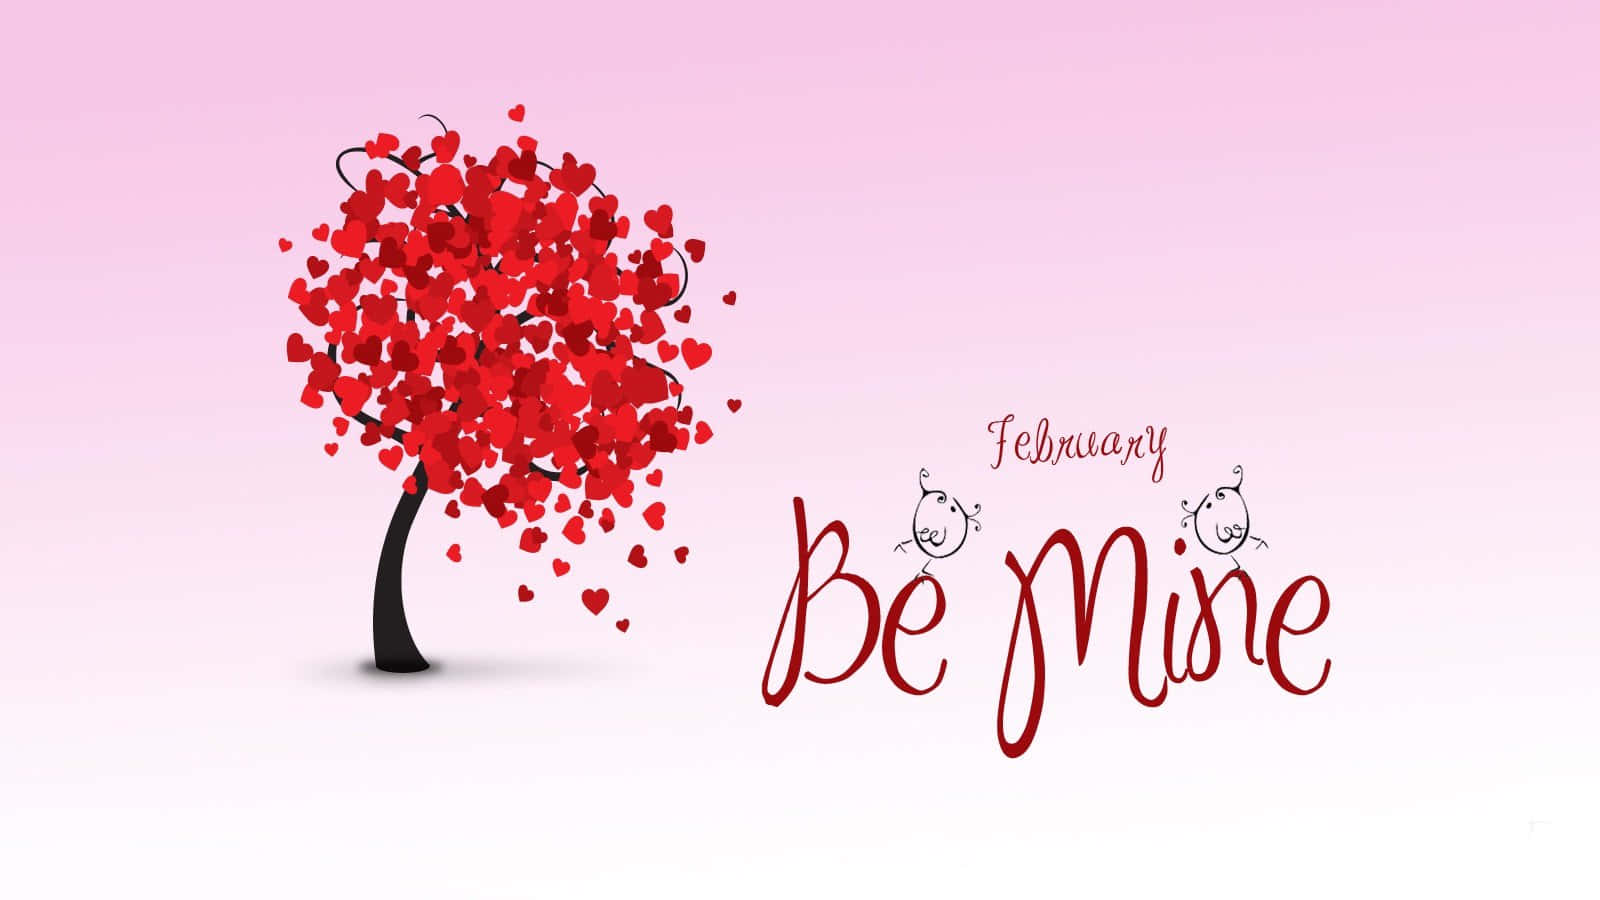 Valentinsdagen Romantisk Dag For Kærlighed Og At Værdsætte Øjeblikke.